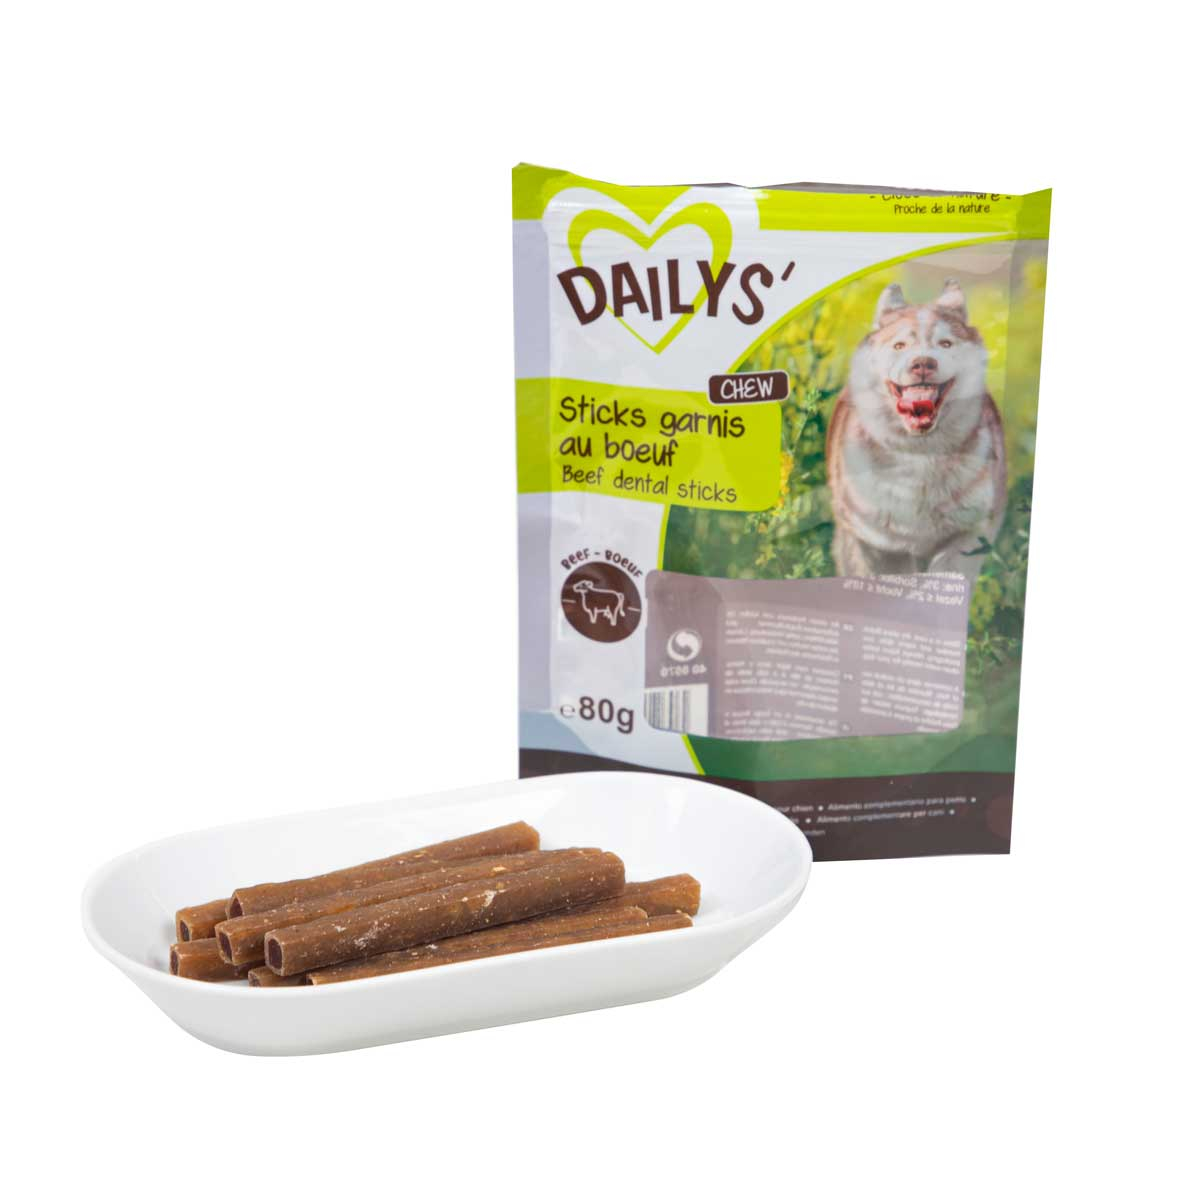 Dailys Sticks gevuld met rundvlees voor de hond 